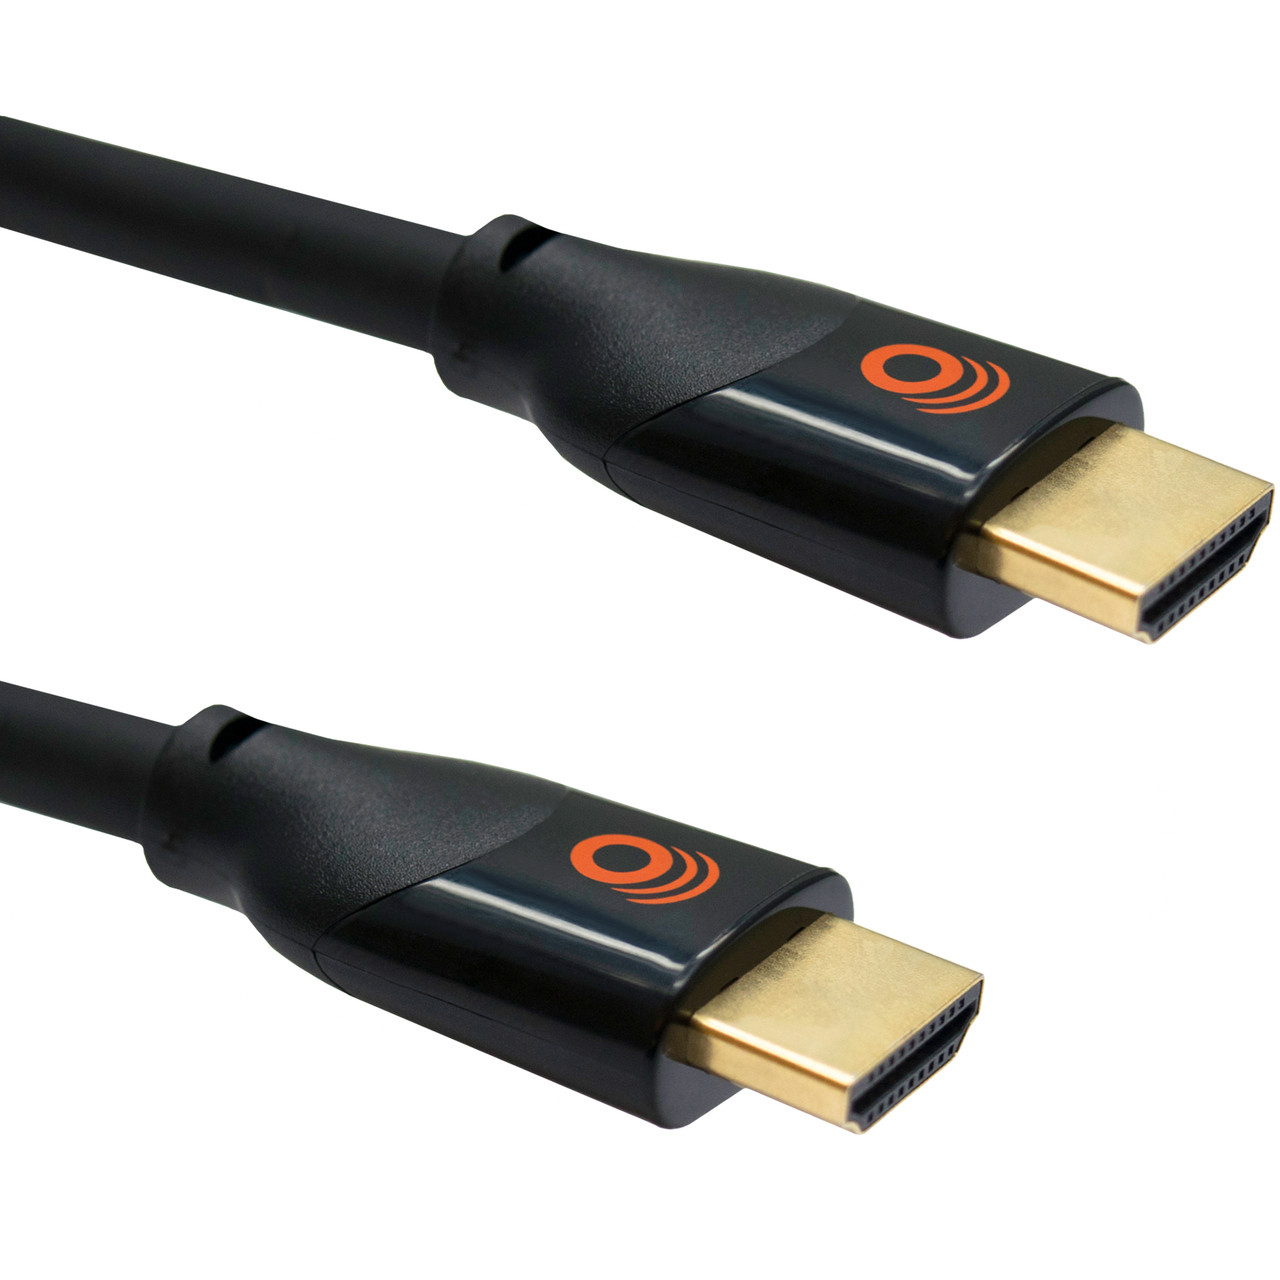 2' Braided Ultra High Speed HDMI Cable (HDMI 2.1) - EGAV-AC21H2